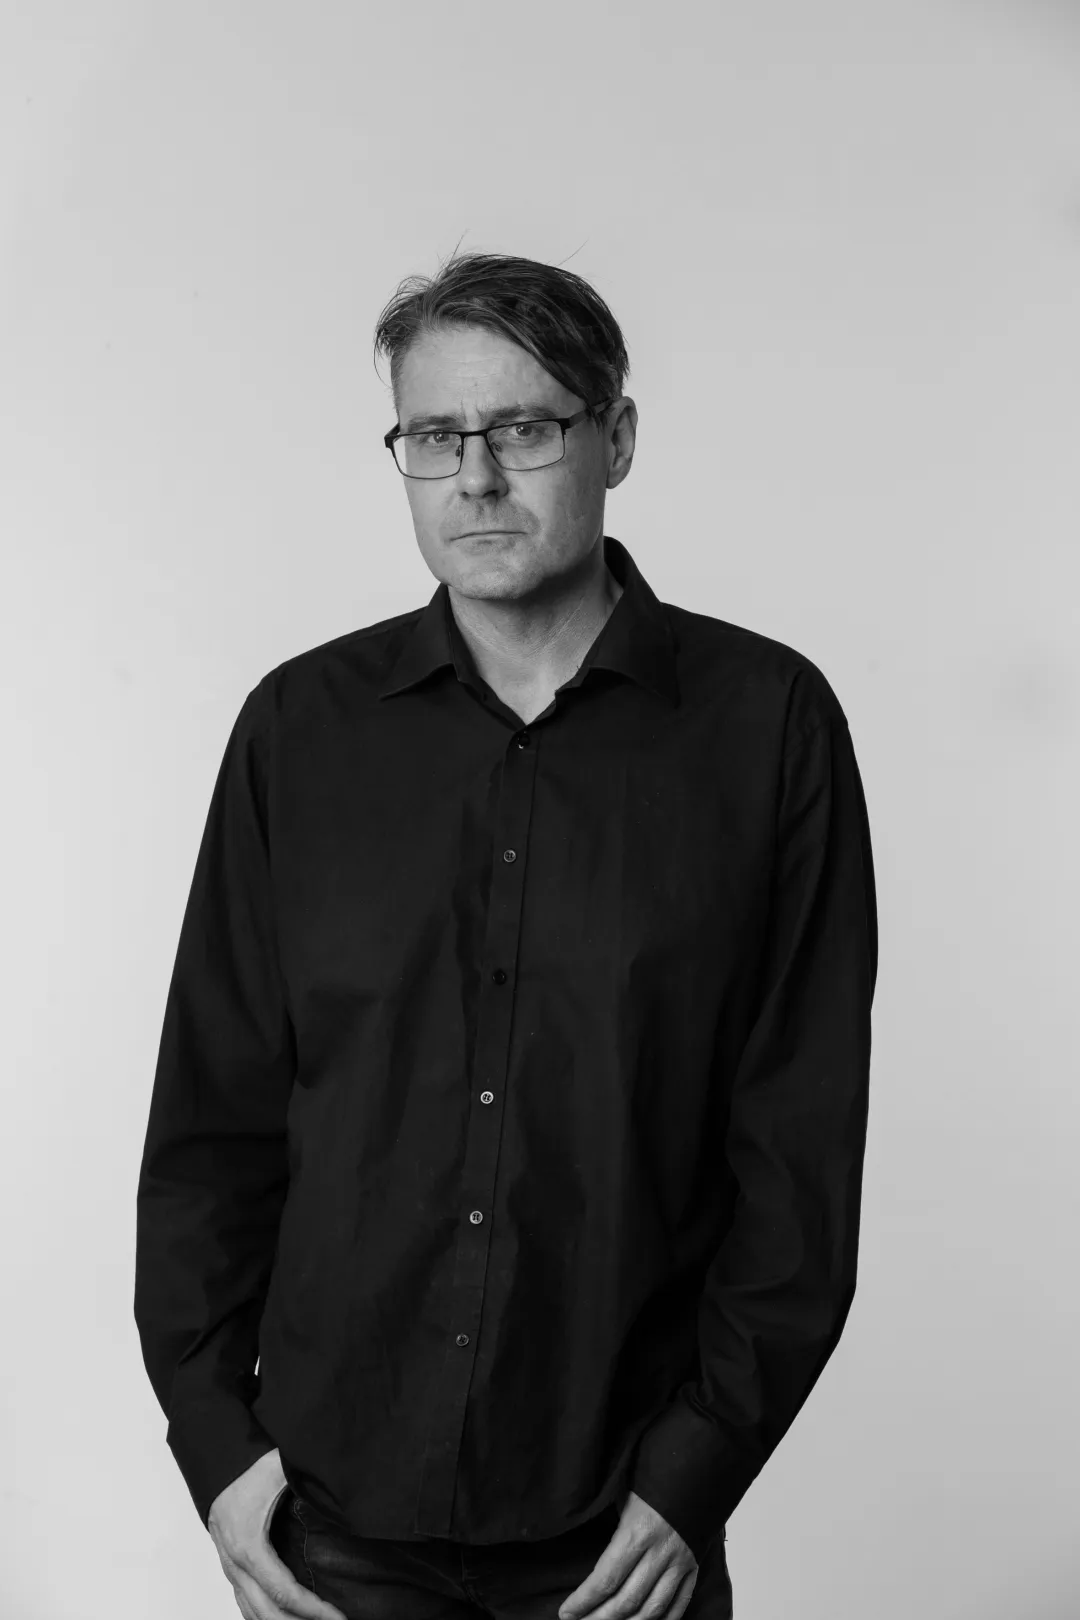 Eiríkur Guðmundsson